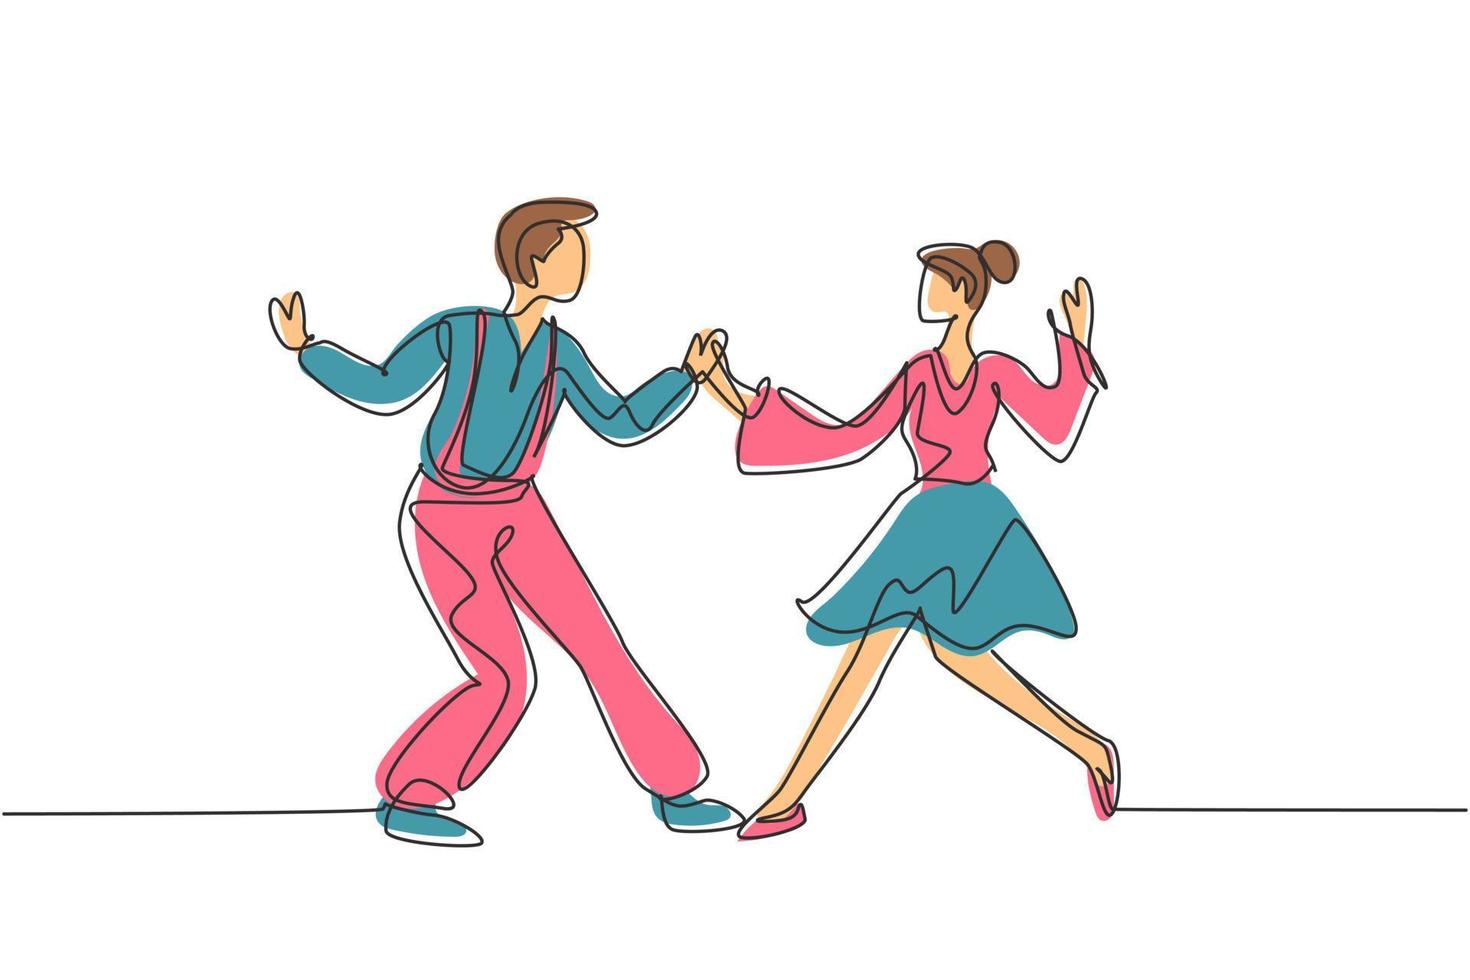 kontinuerlig en rad ritning man och kvinna dansar lindy hop eller swing tillsammans. manliga och kvinnliga karaktärer som dansar i skolan eller festen. enda rad rita design vektorgrafisk illustration vektor